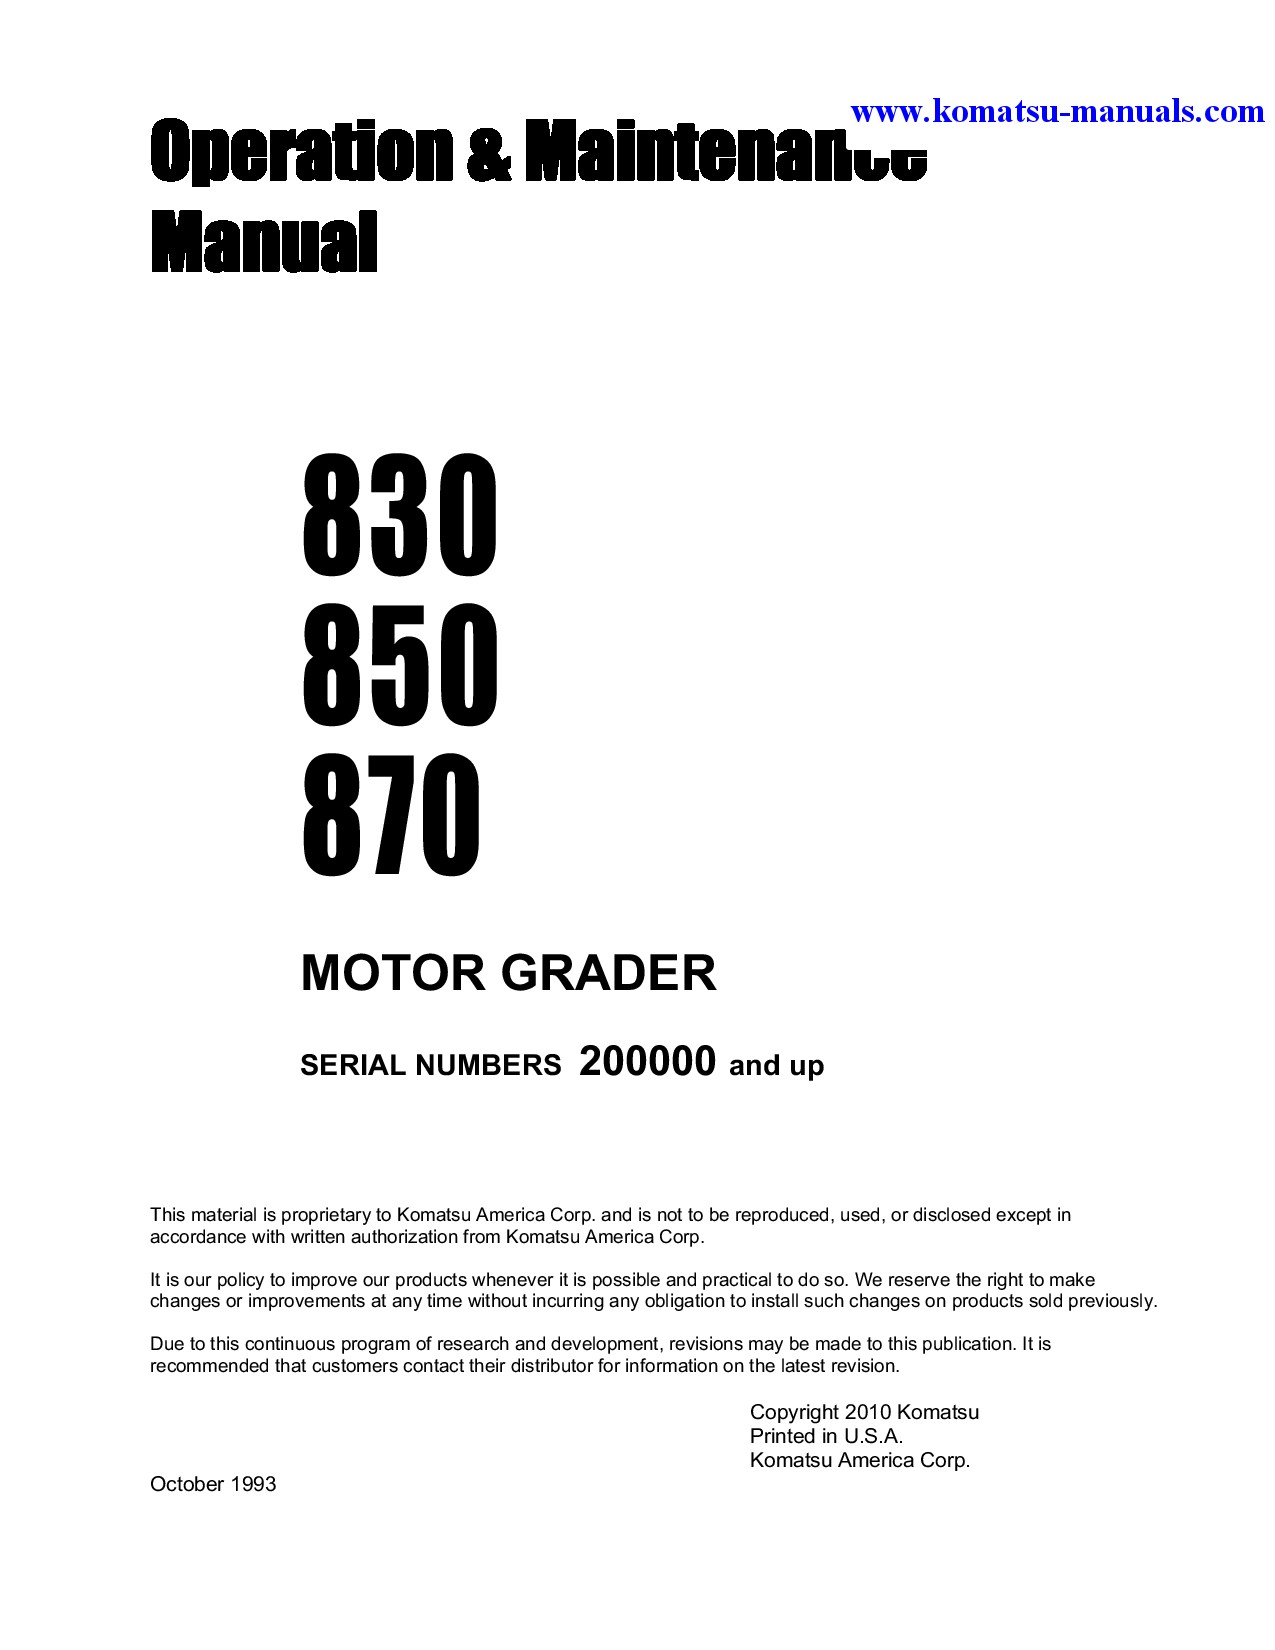 All Komatsu Manuals - Komatsu 830 operation and maintenance manuals ...